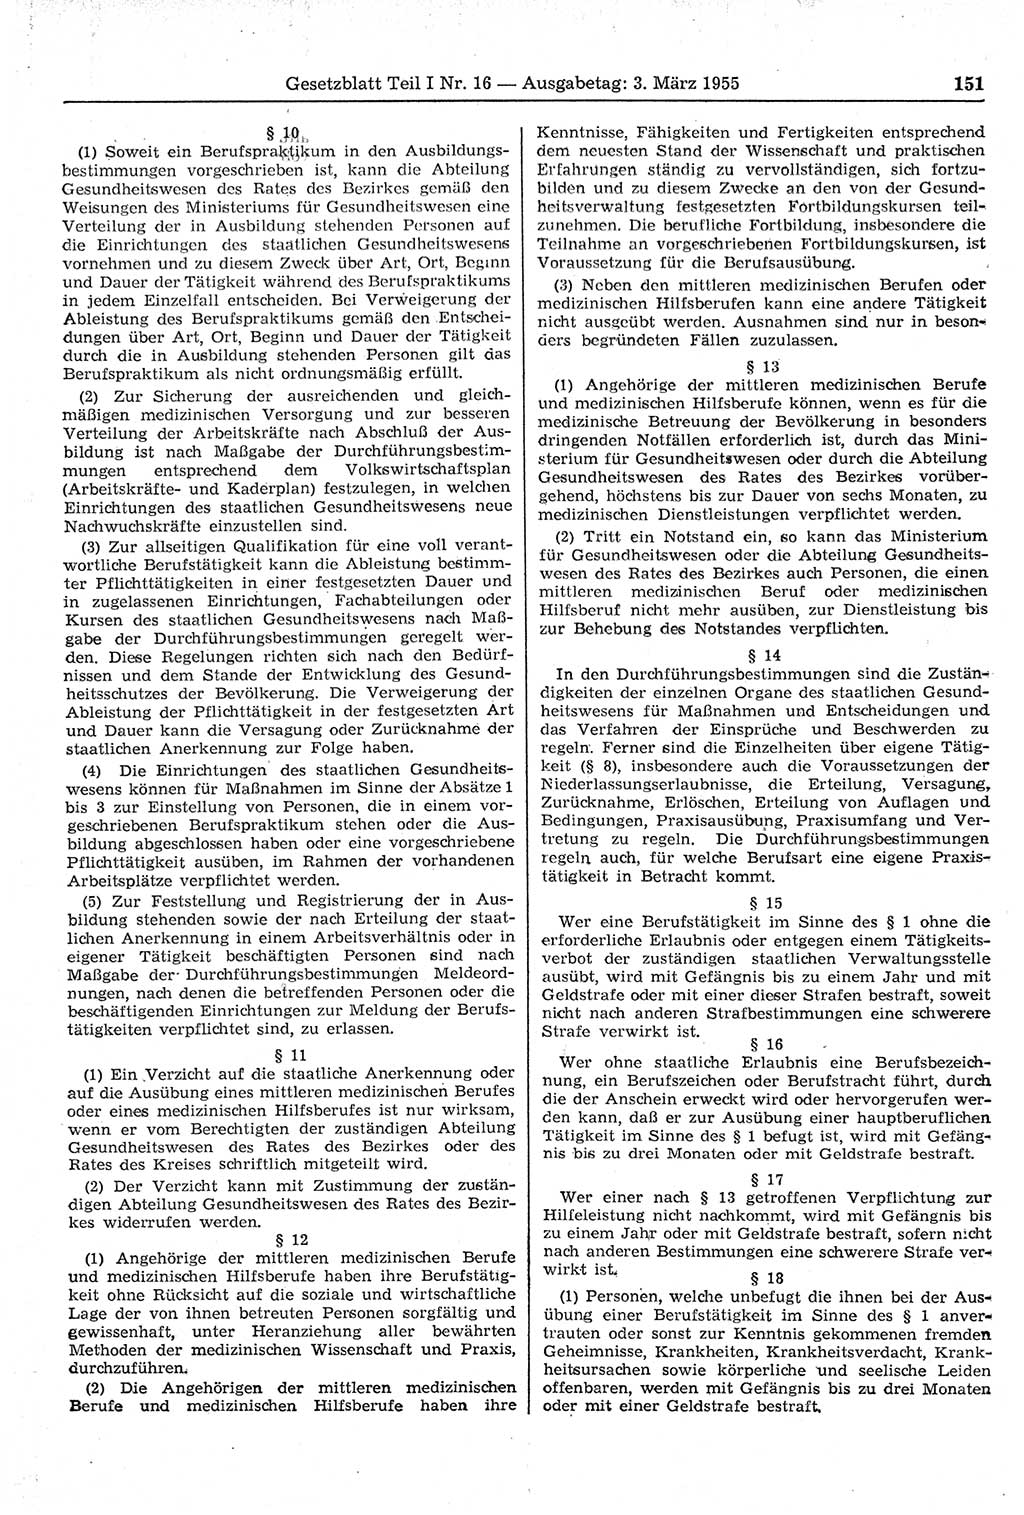 Gesetzblatt (GBl.) der Deutschen Demokratischen Republik (DDR) Teil Ⅰ 1955, Seite 151 (GBl. DDR Ⅰ 1955, S. 151)